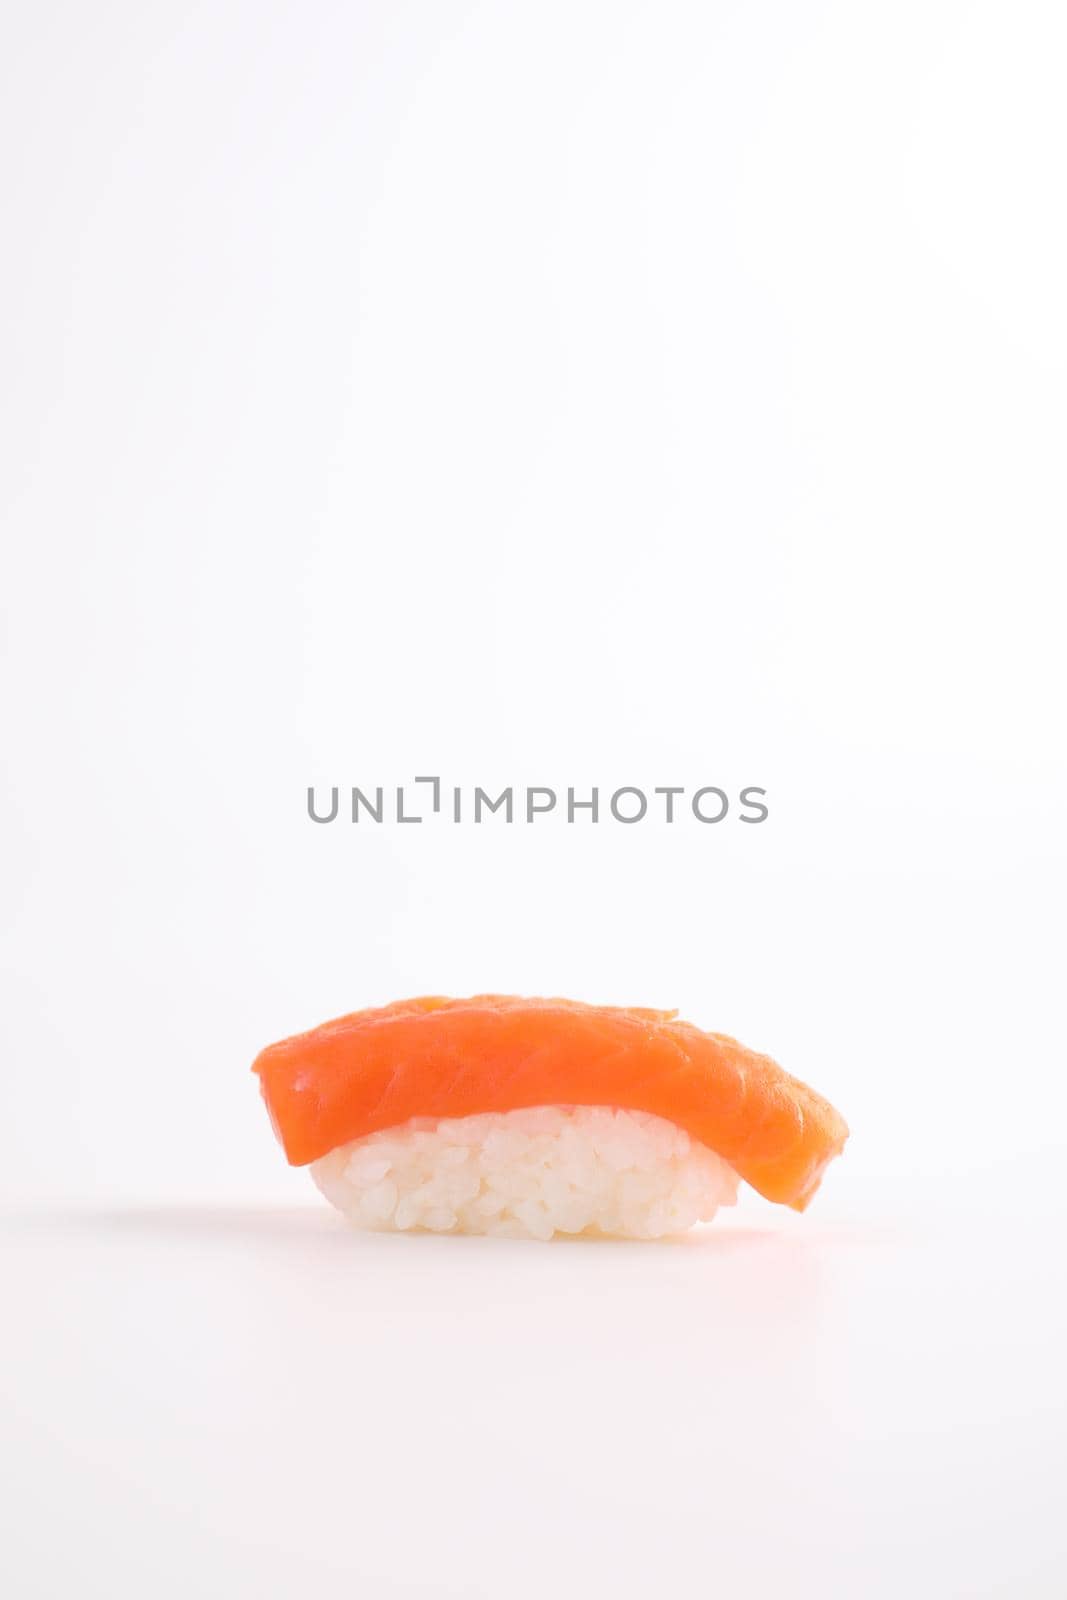 Salmon sushi Japanese food isolated in white background by piyato